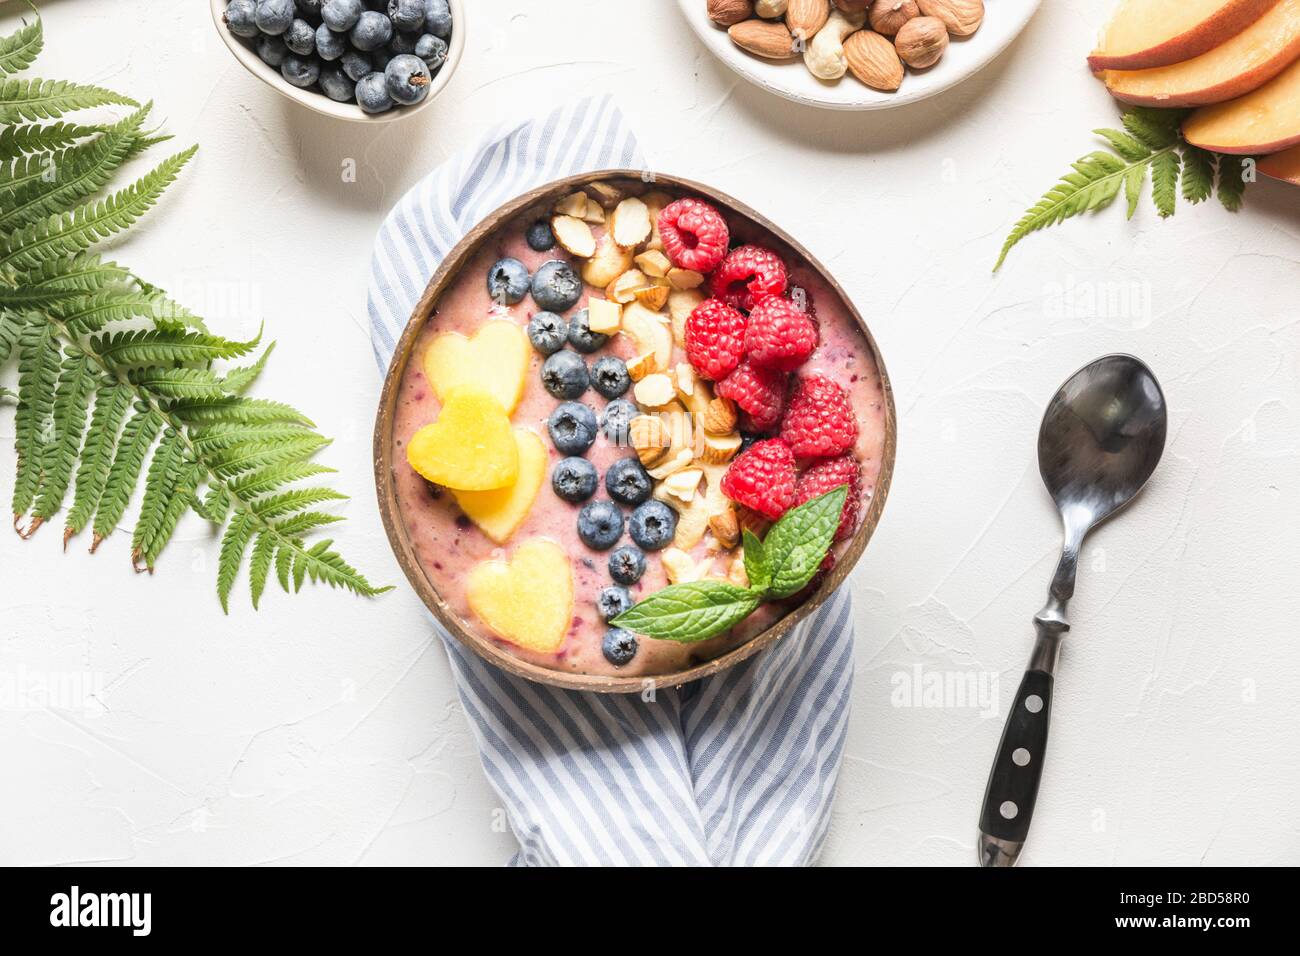 Banane und Blaubeere Smoothie auf Weiß. Gesundes Frühstück in der Kokosschale. Ansicht von oben mit Kopierbereich. Sauberes Essen, vegetarisches Essen. Stockfoto